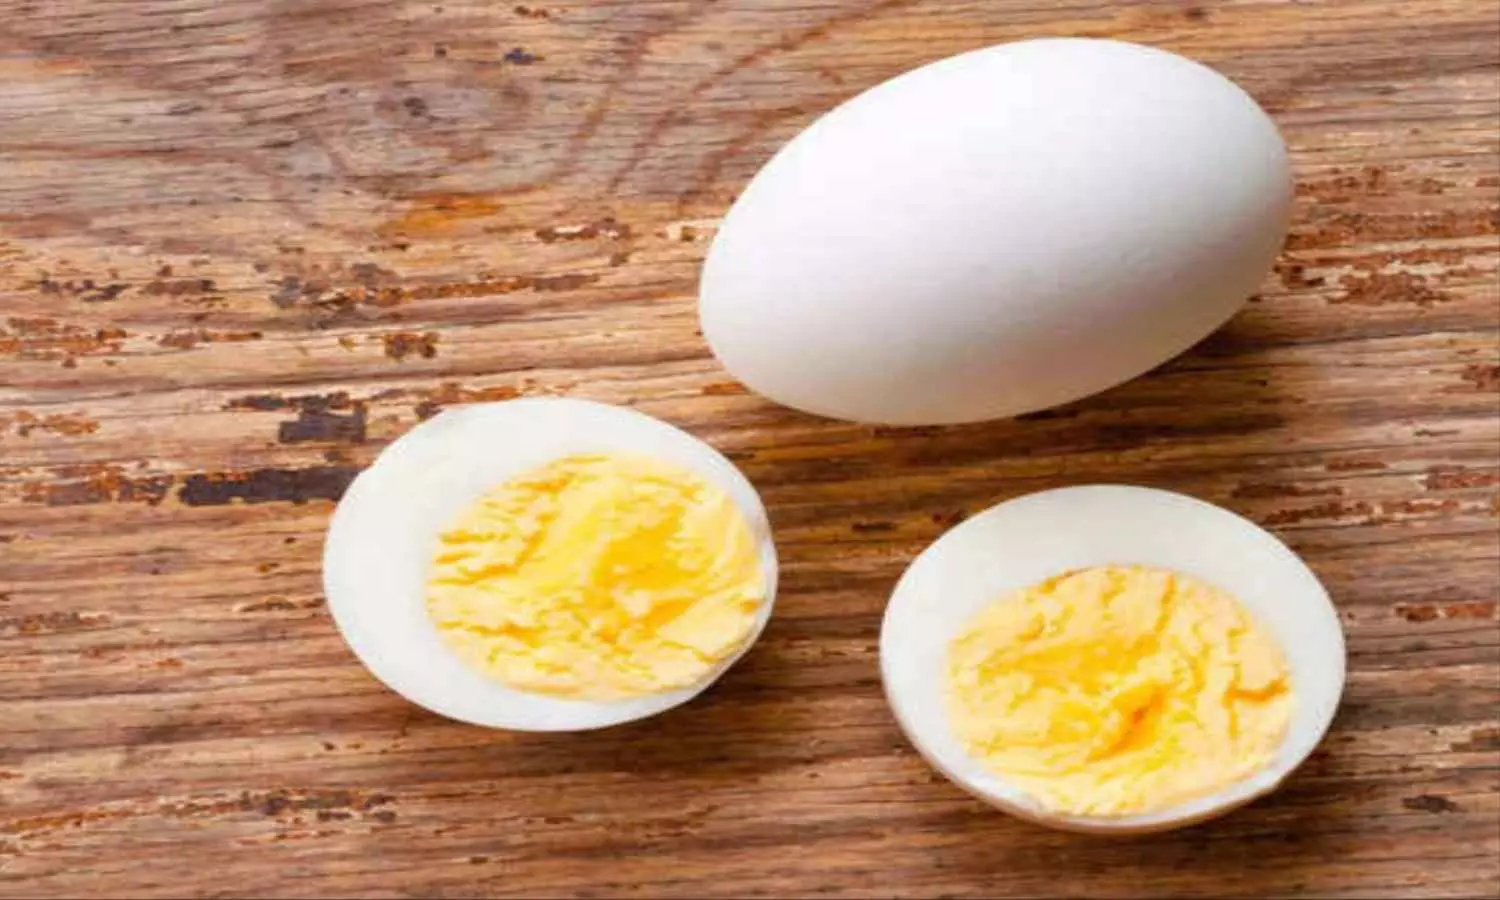 Egg Side Effects: इन लोगों को भूलकर भी नहीं करना चाहिए अंडे का सेवन, उठाने पड़ सकते हैं नुकसान